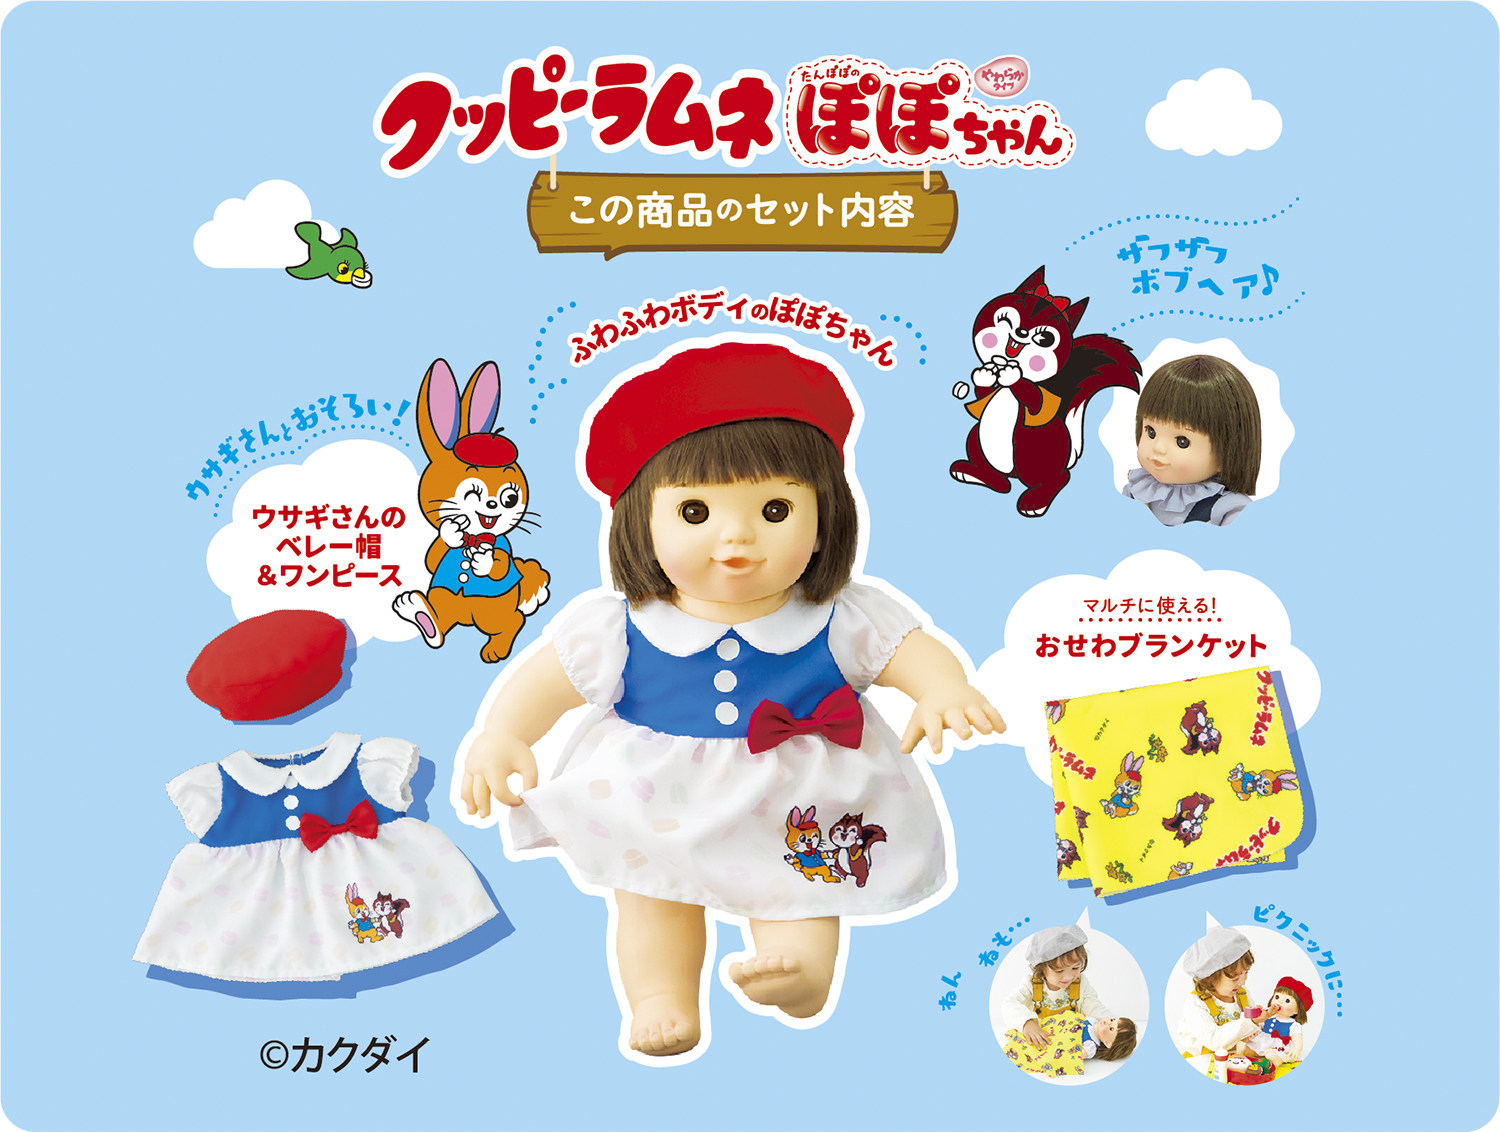 クッピーラムネぽぽちゃん | ぽぽちゃん-人形 | 乳幼児玩具メーカー 